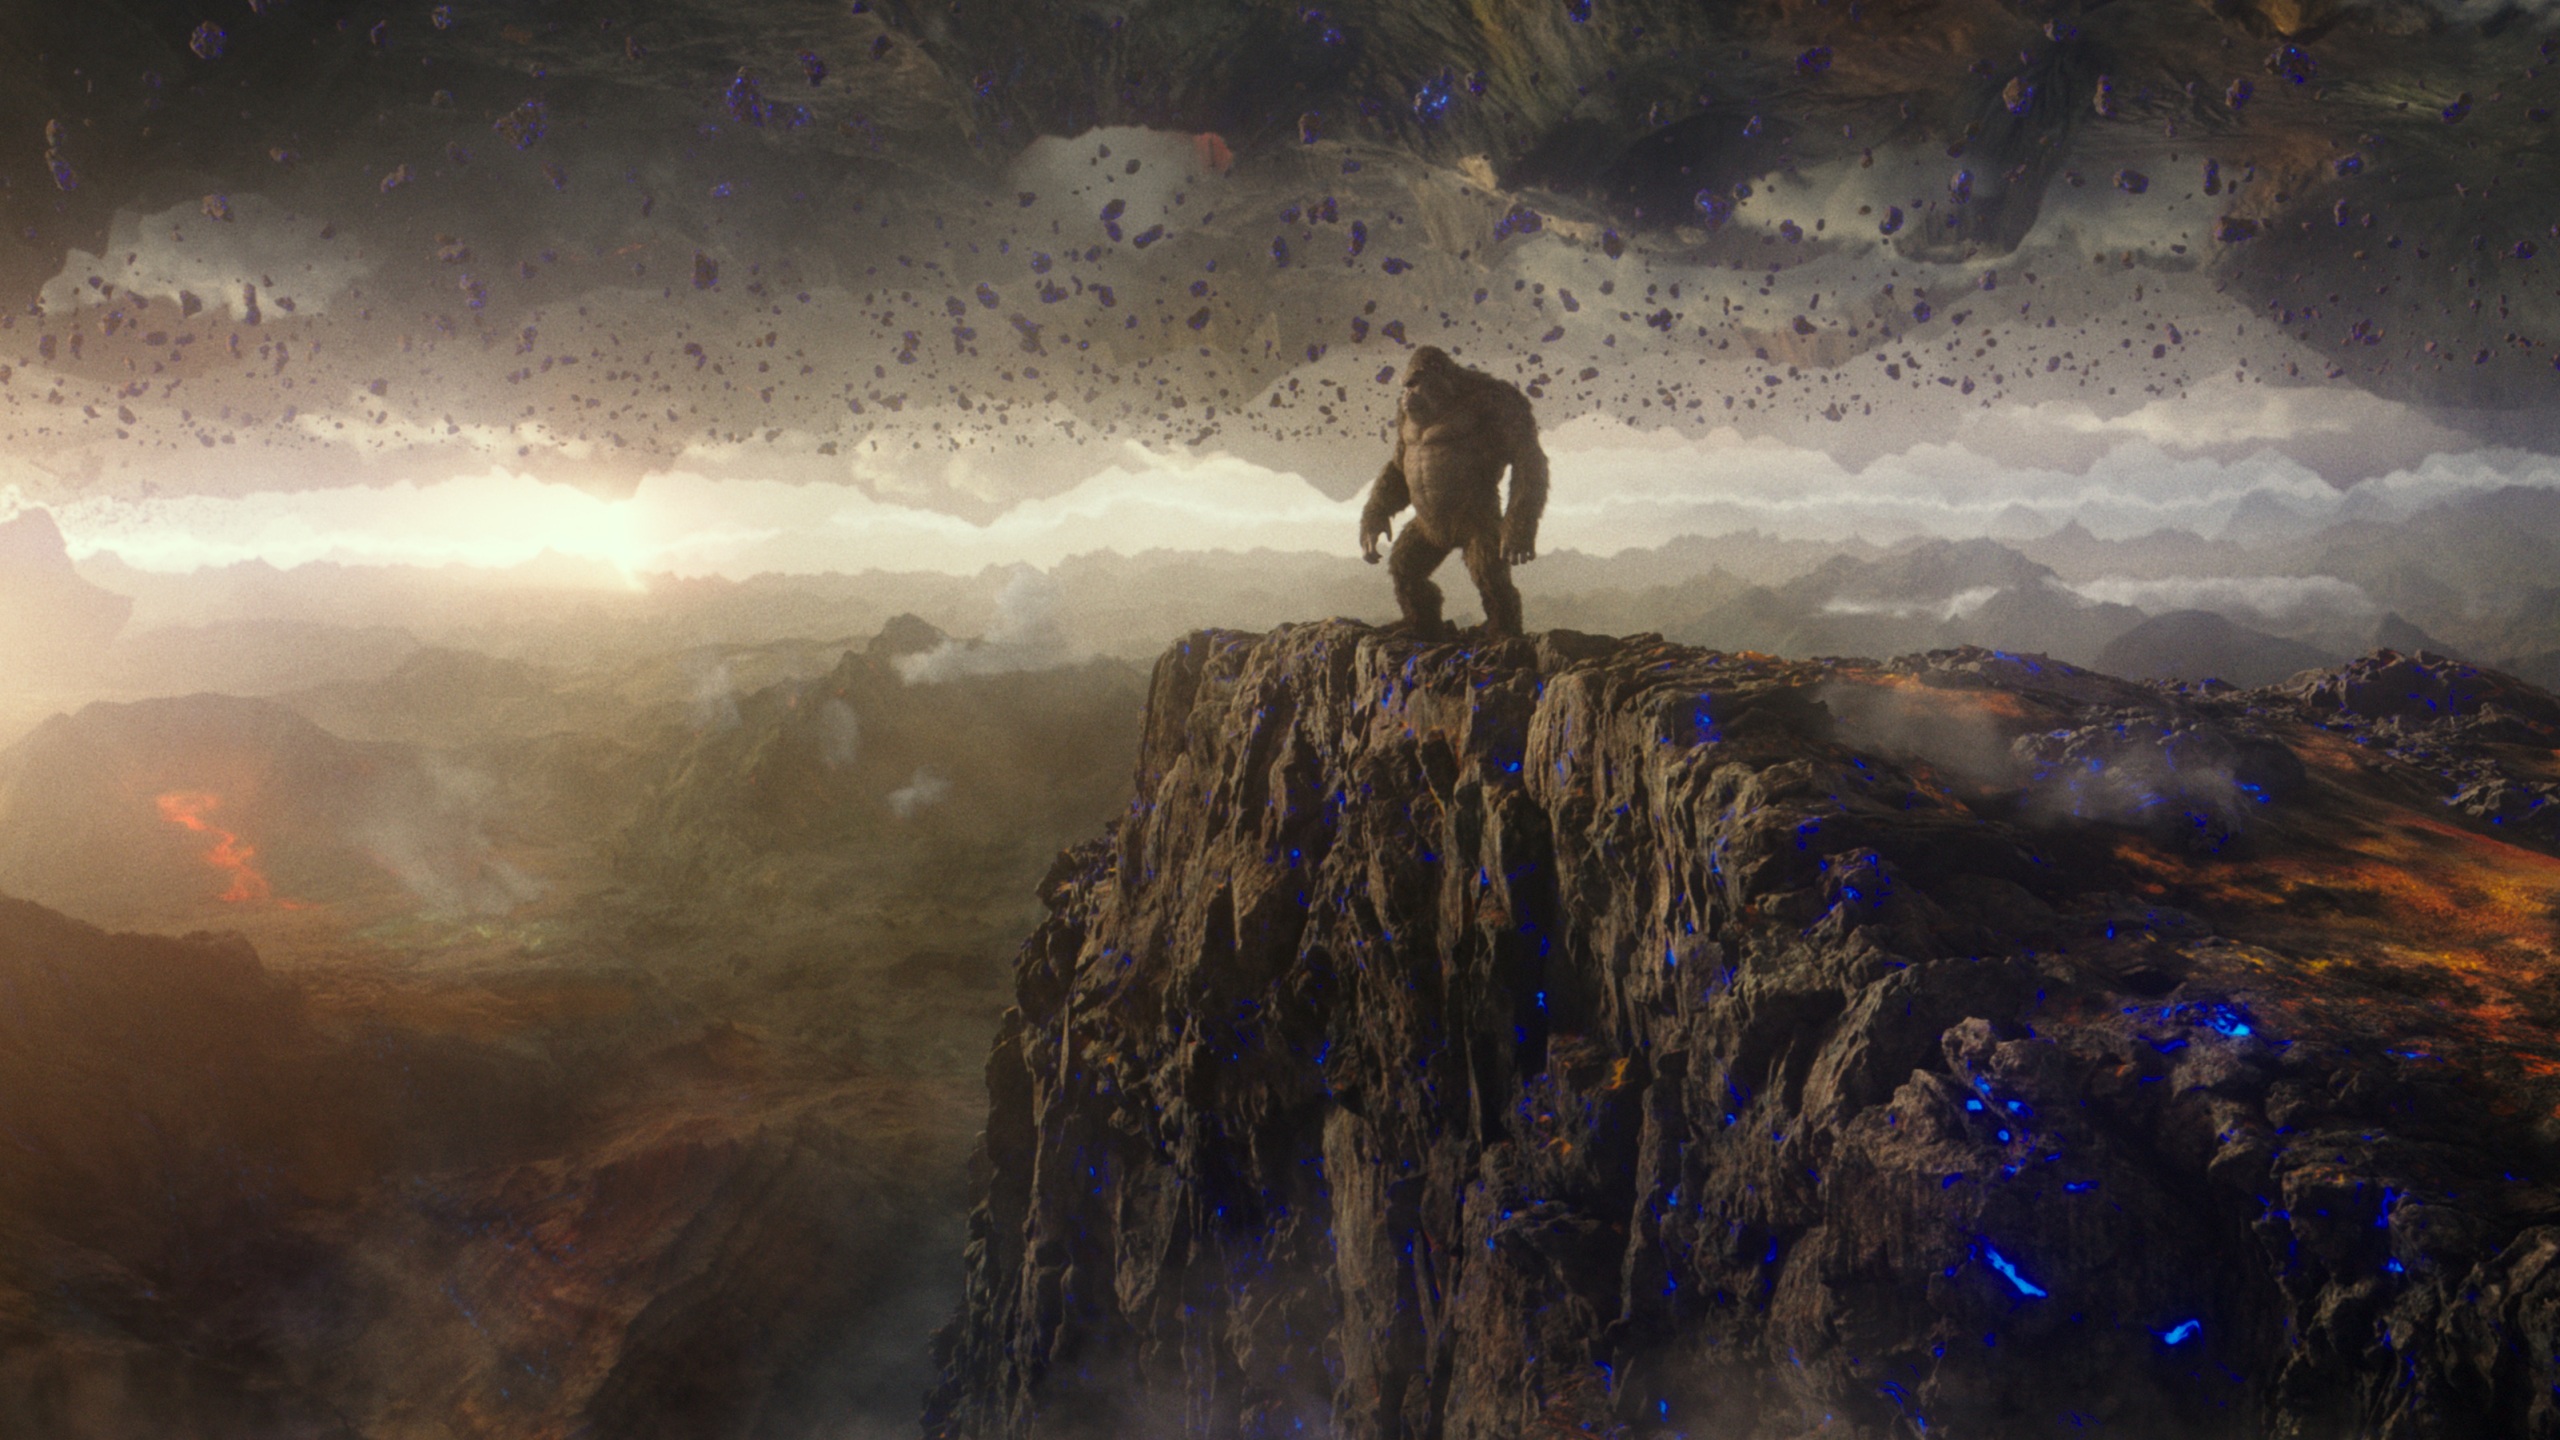 Wallpaper 4k Godzilla Vs Kong Still 2021 4k Wallpaper